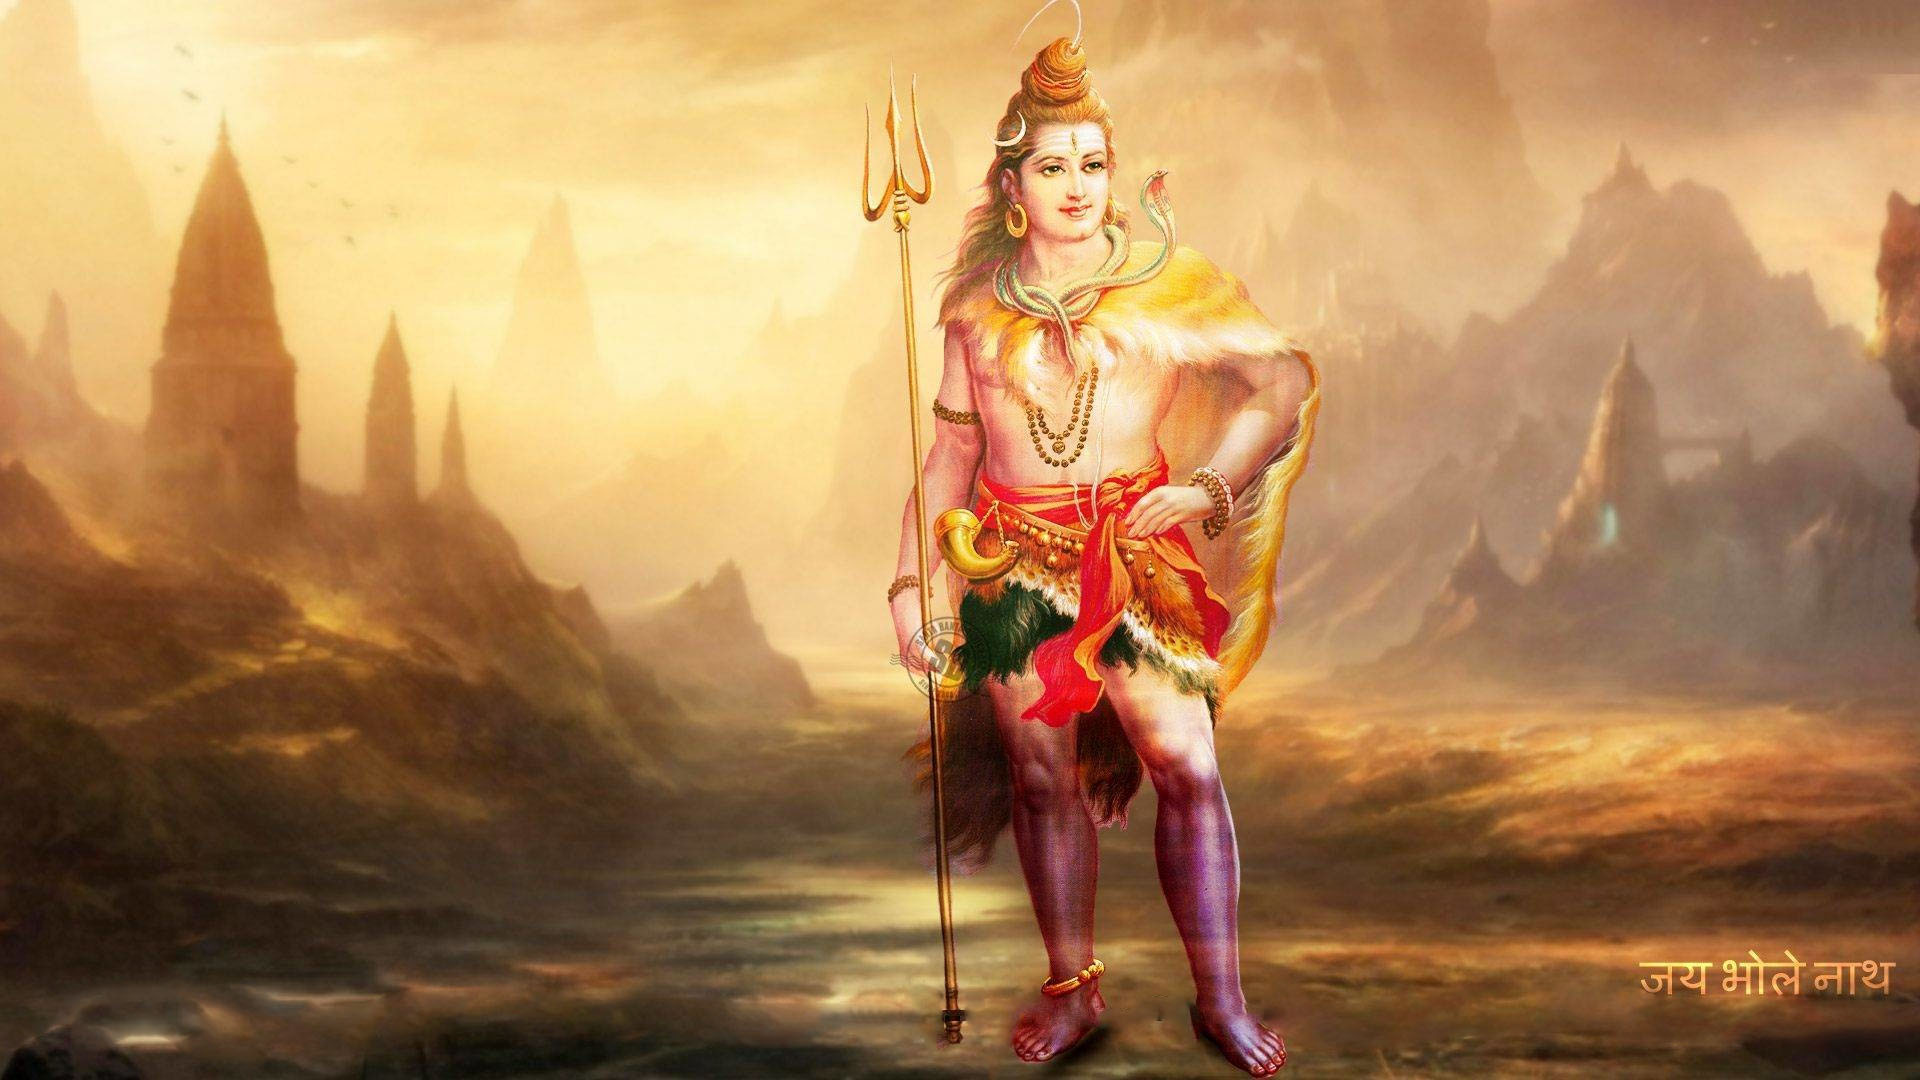 Lord Shiva Hd Wallpapers 1080p - Full Hd Lord Shiva Hd - 1920x1080 Wallpaper  